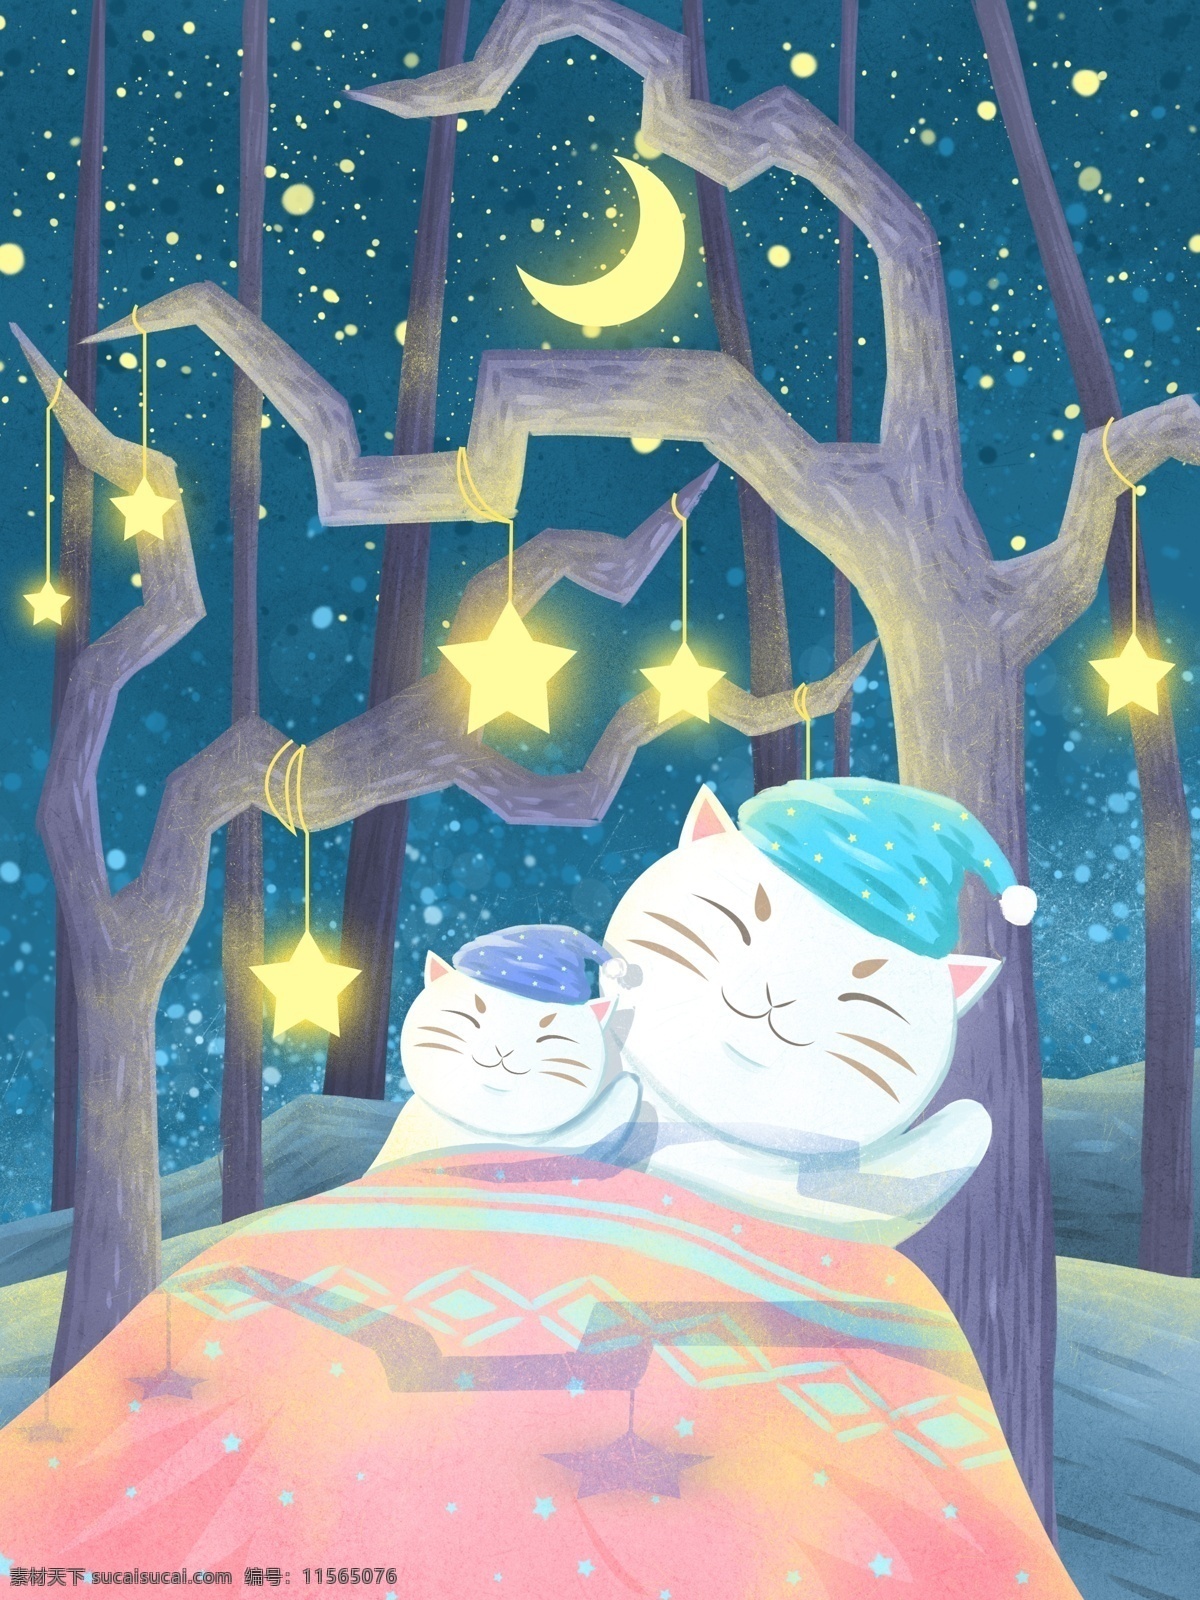 心语 心情 晚安 你好 插画 树林 中 大 猫 小猫 星空 星星 清新 可爱 壁纸 晚安你好 夜晚 月亮 被子 睡帽 治愈 日签